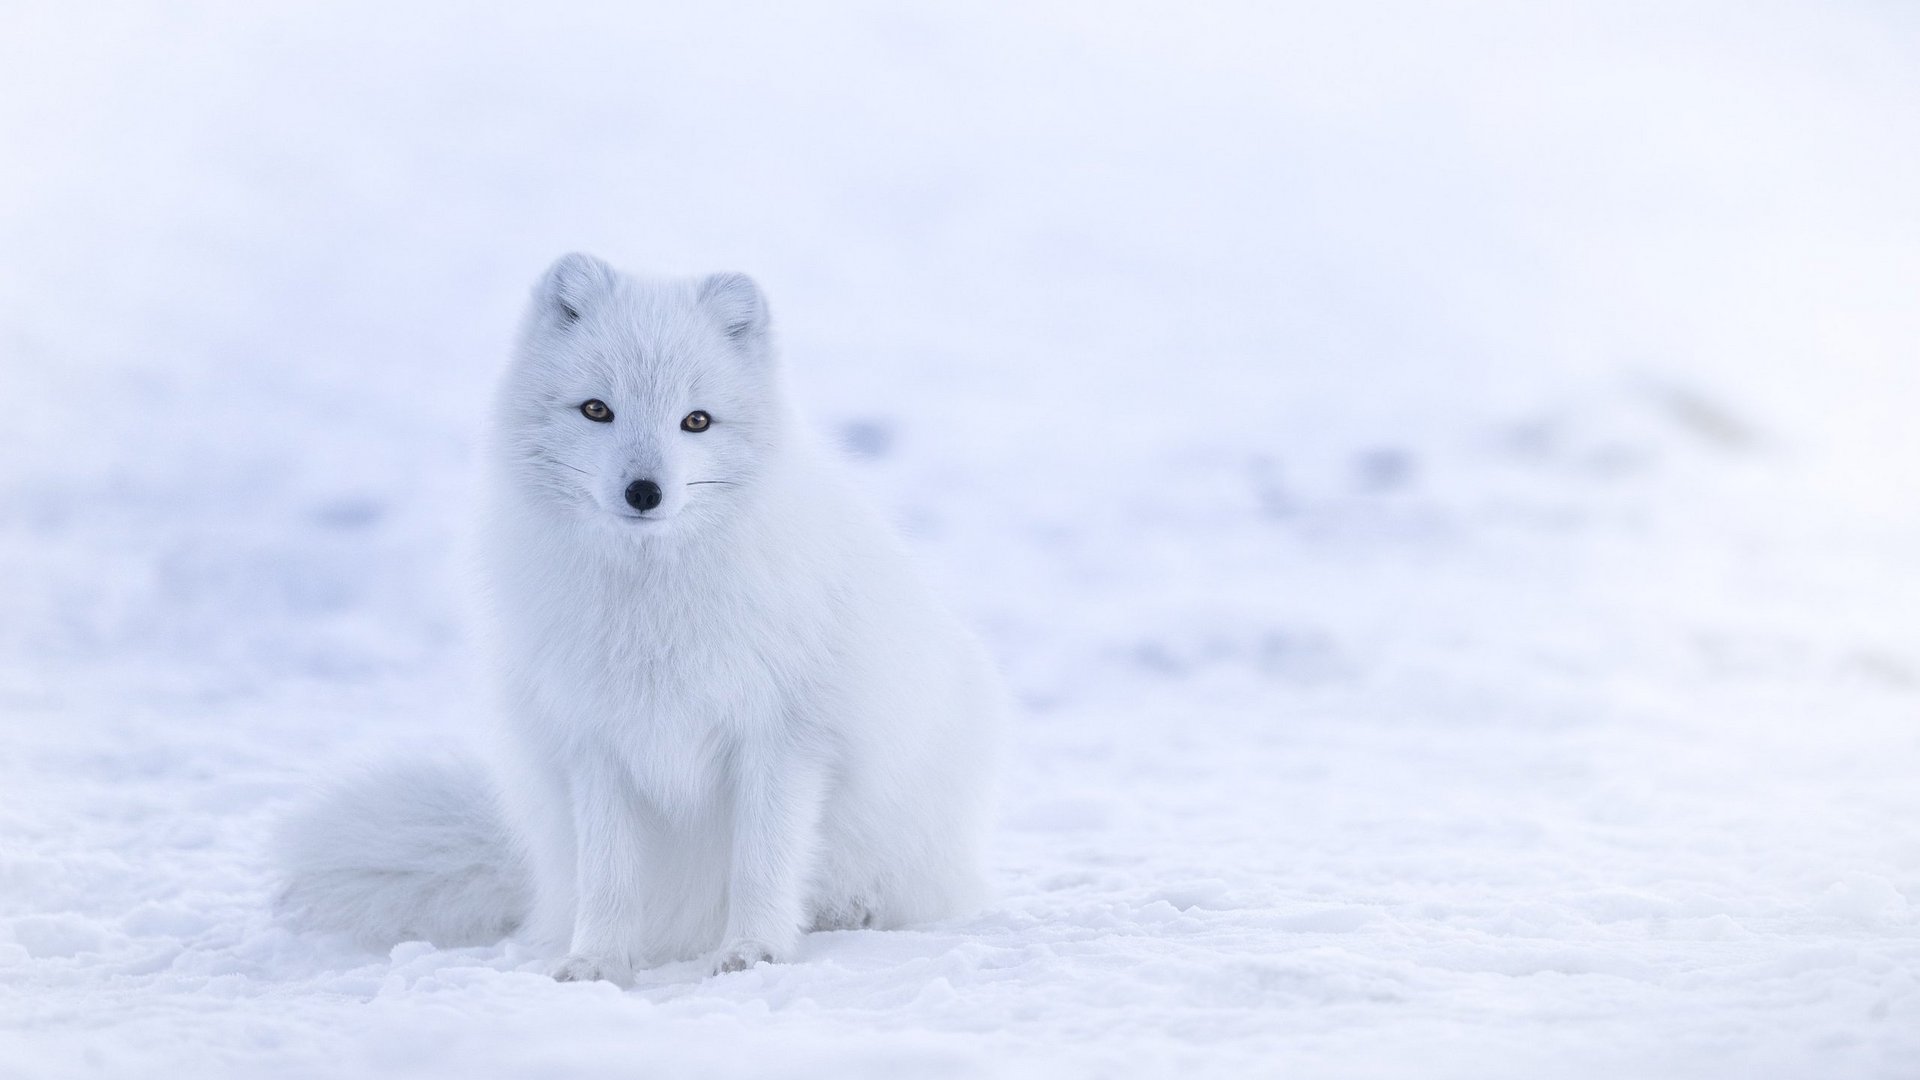 Polarfuchs im weissen Winterfell auf Schneefläche sitzend 